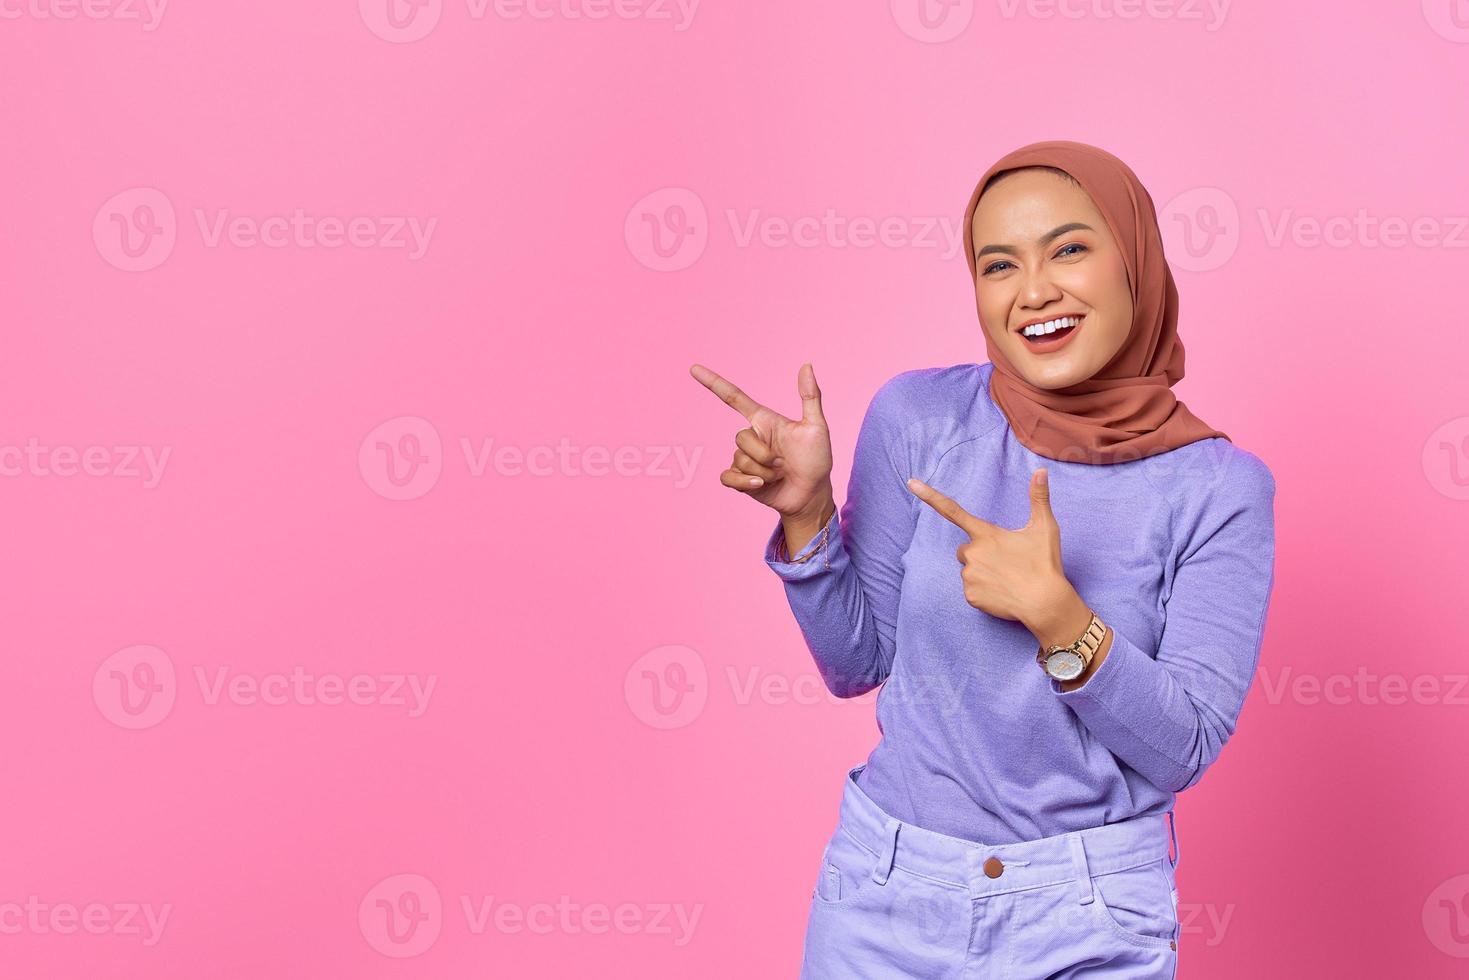 retrato, de, sonriente, joven, mujer asiática, señalar con el dedo, en, espacio de la copia, en, fondo rosa foto